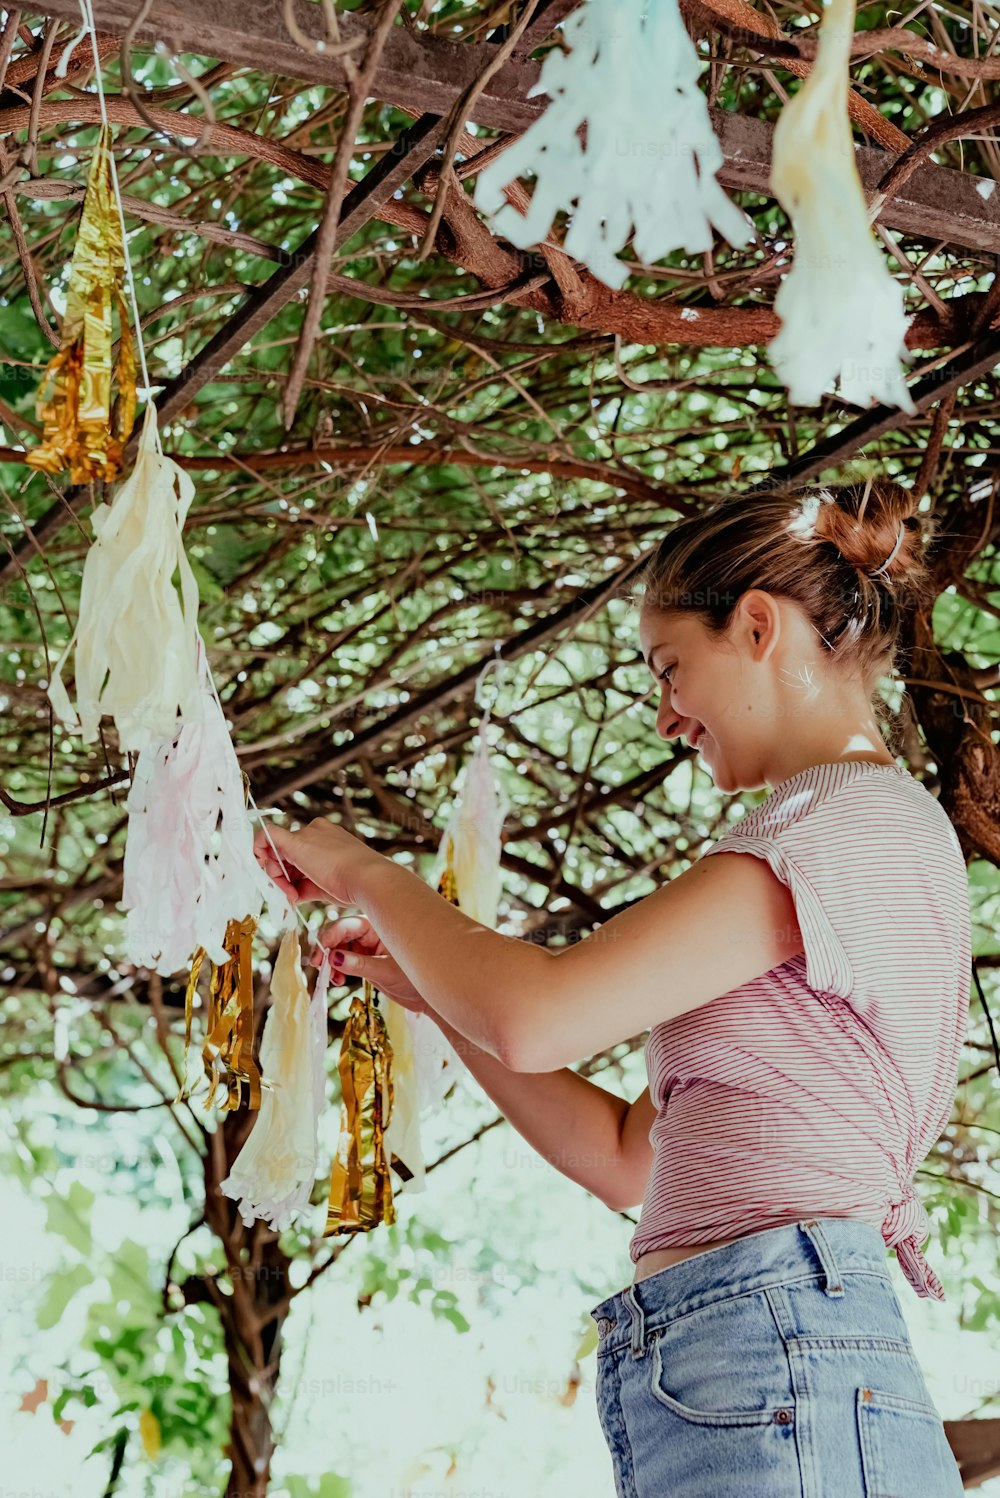 Uma jovem está segurando um fio de barbante pendurado em uma árvore